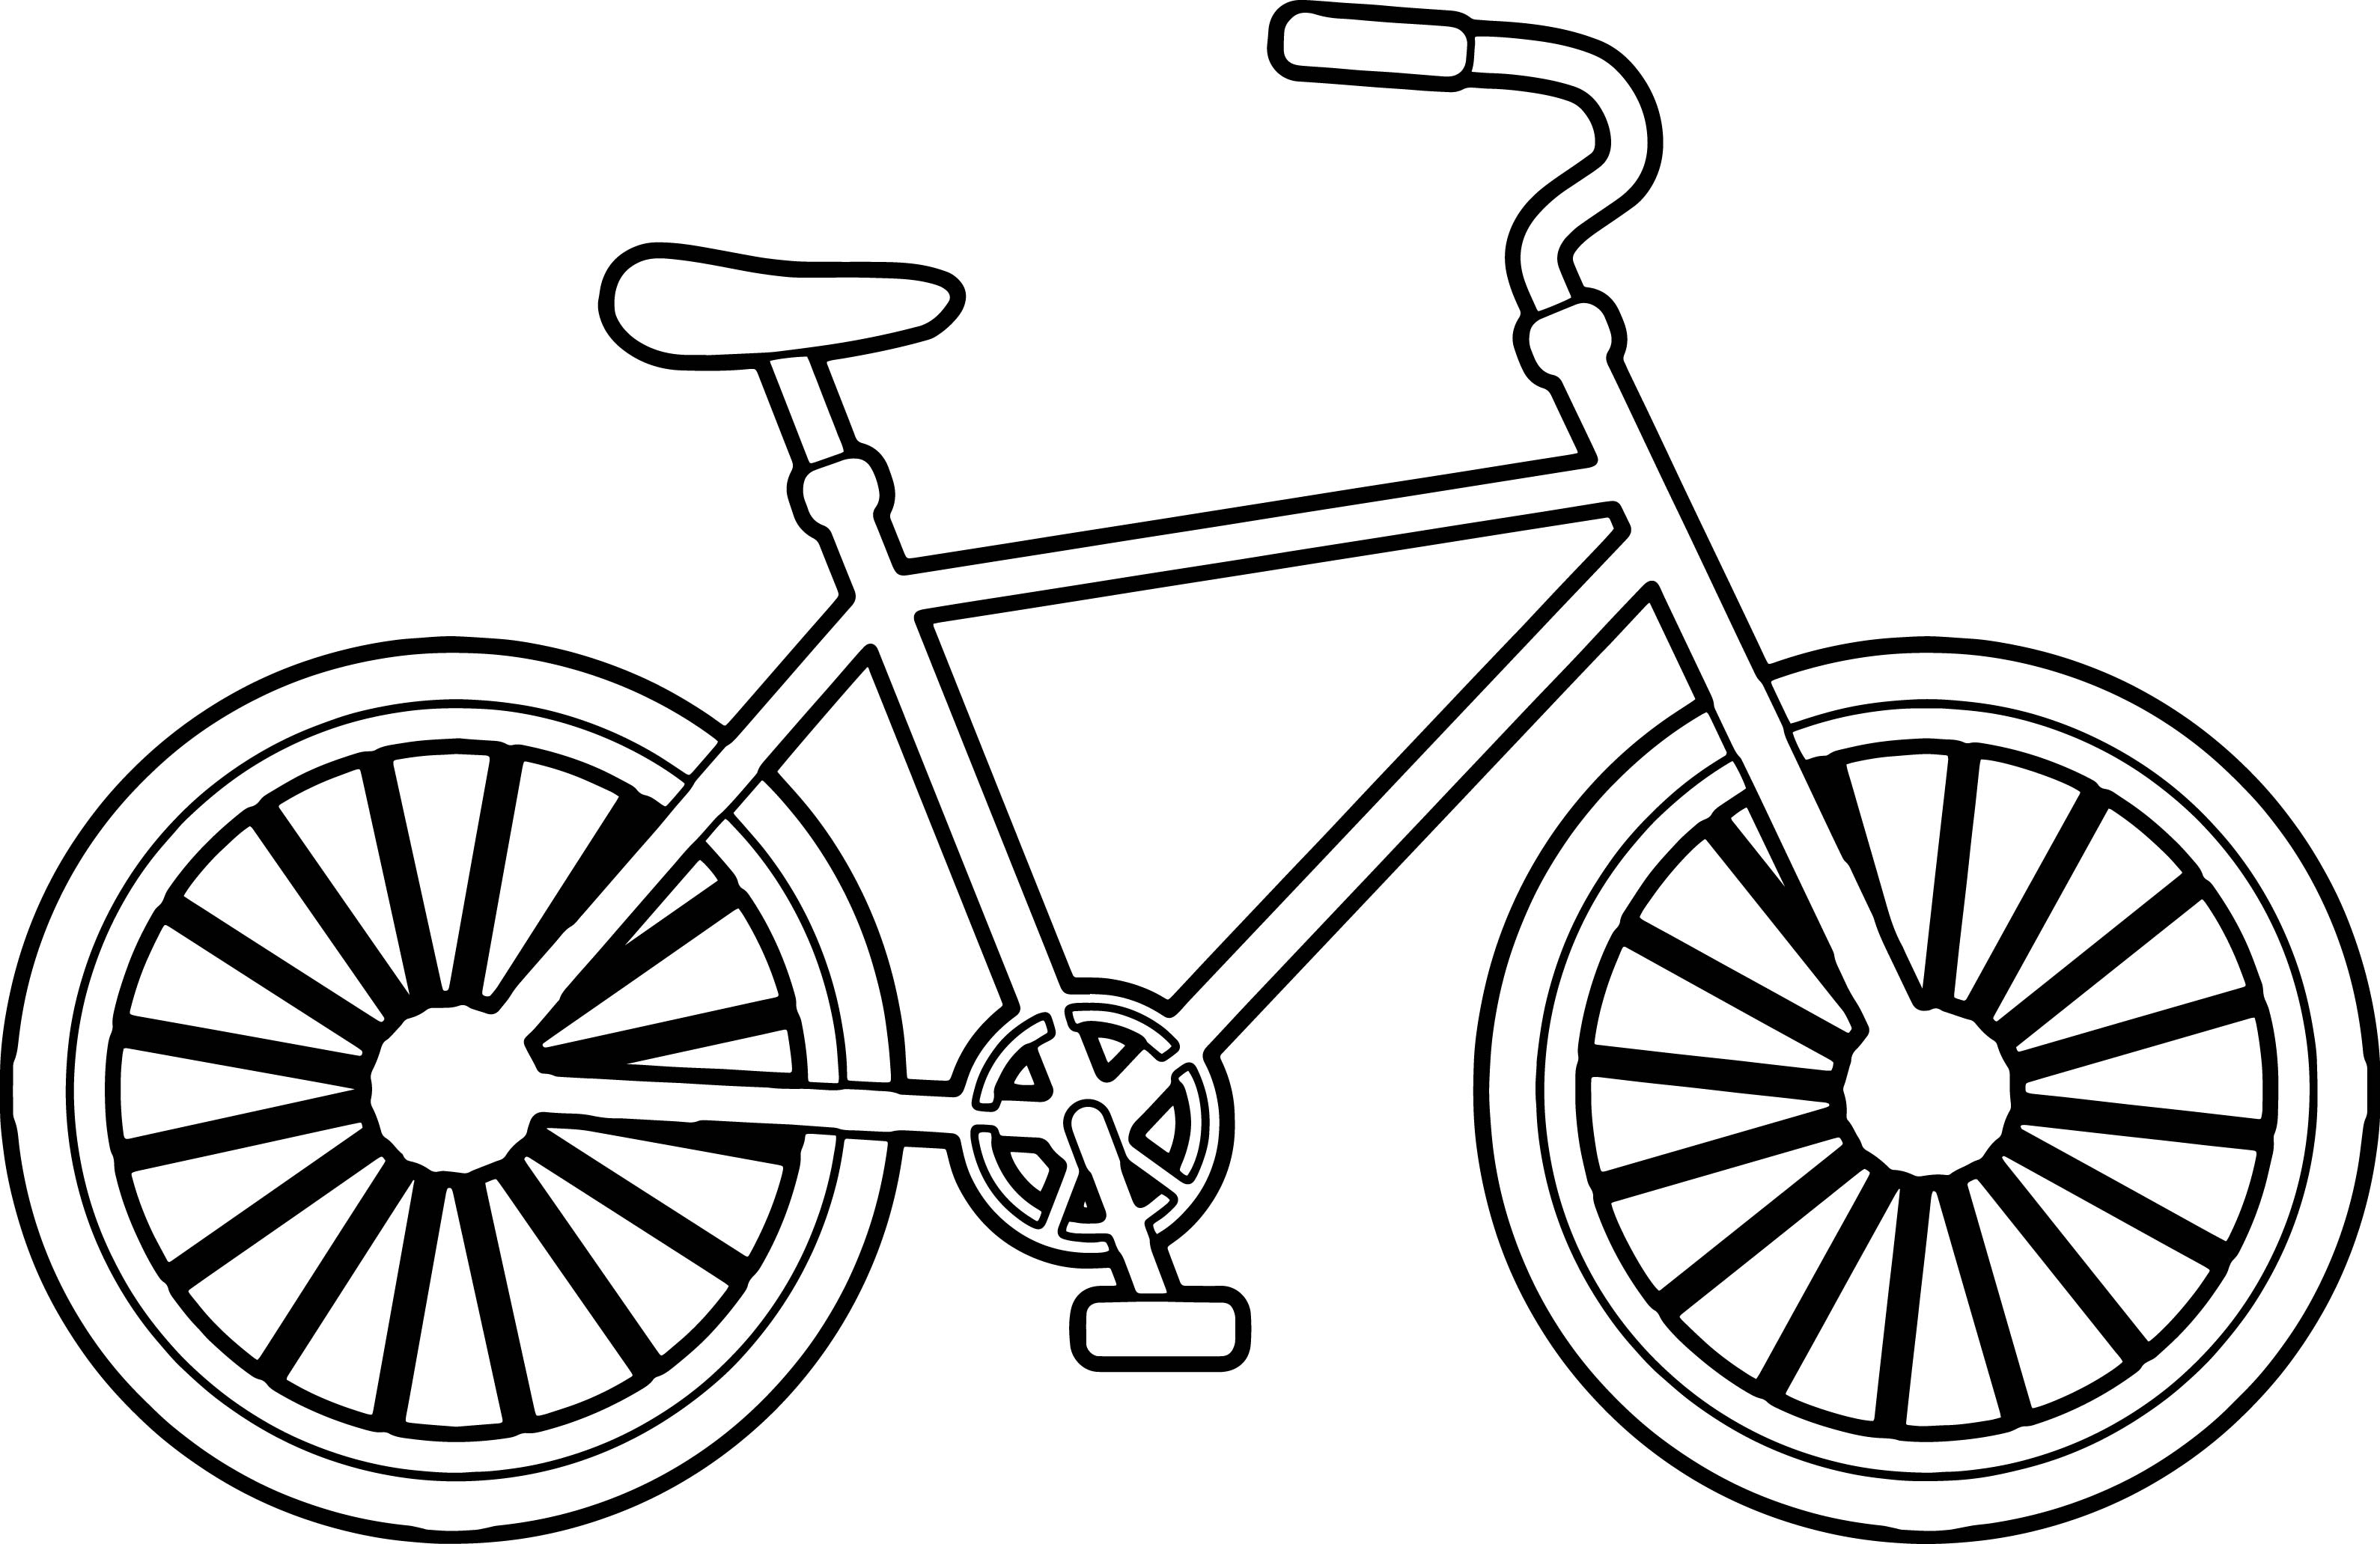 Hãy xem hình vẽ daotaonec đầy sắc màu với hình xe đạp đầy phong cách. Đây sẽ là món quà tuyệt vời cho những người yêu thích đạp xe và nghệ thuật.